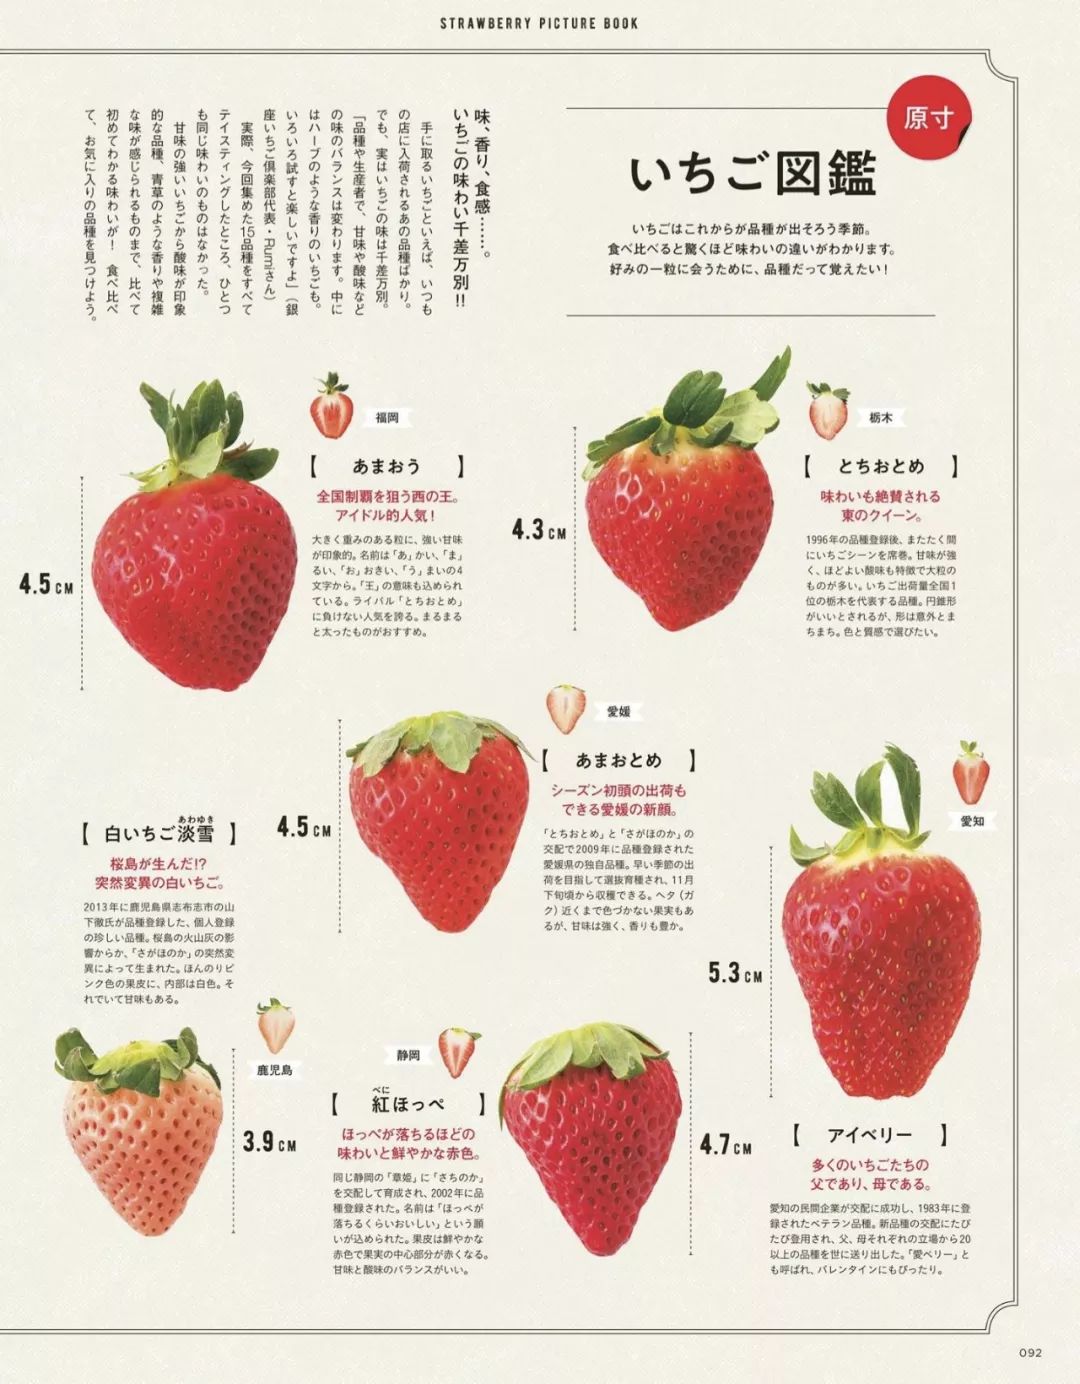 草莓品种大全名称图片图片